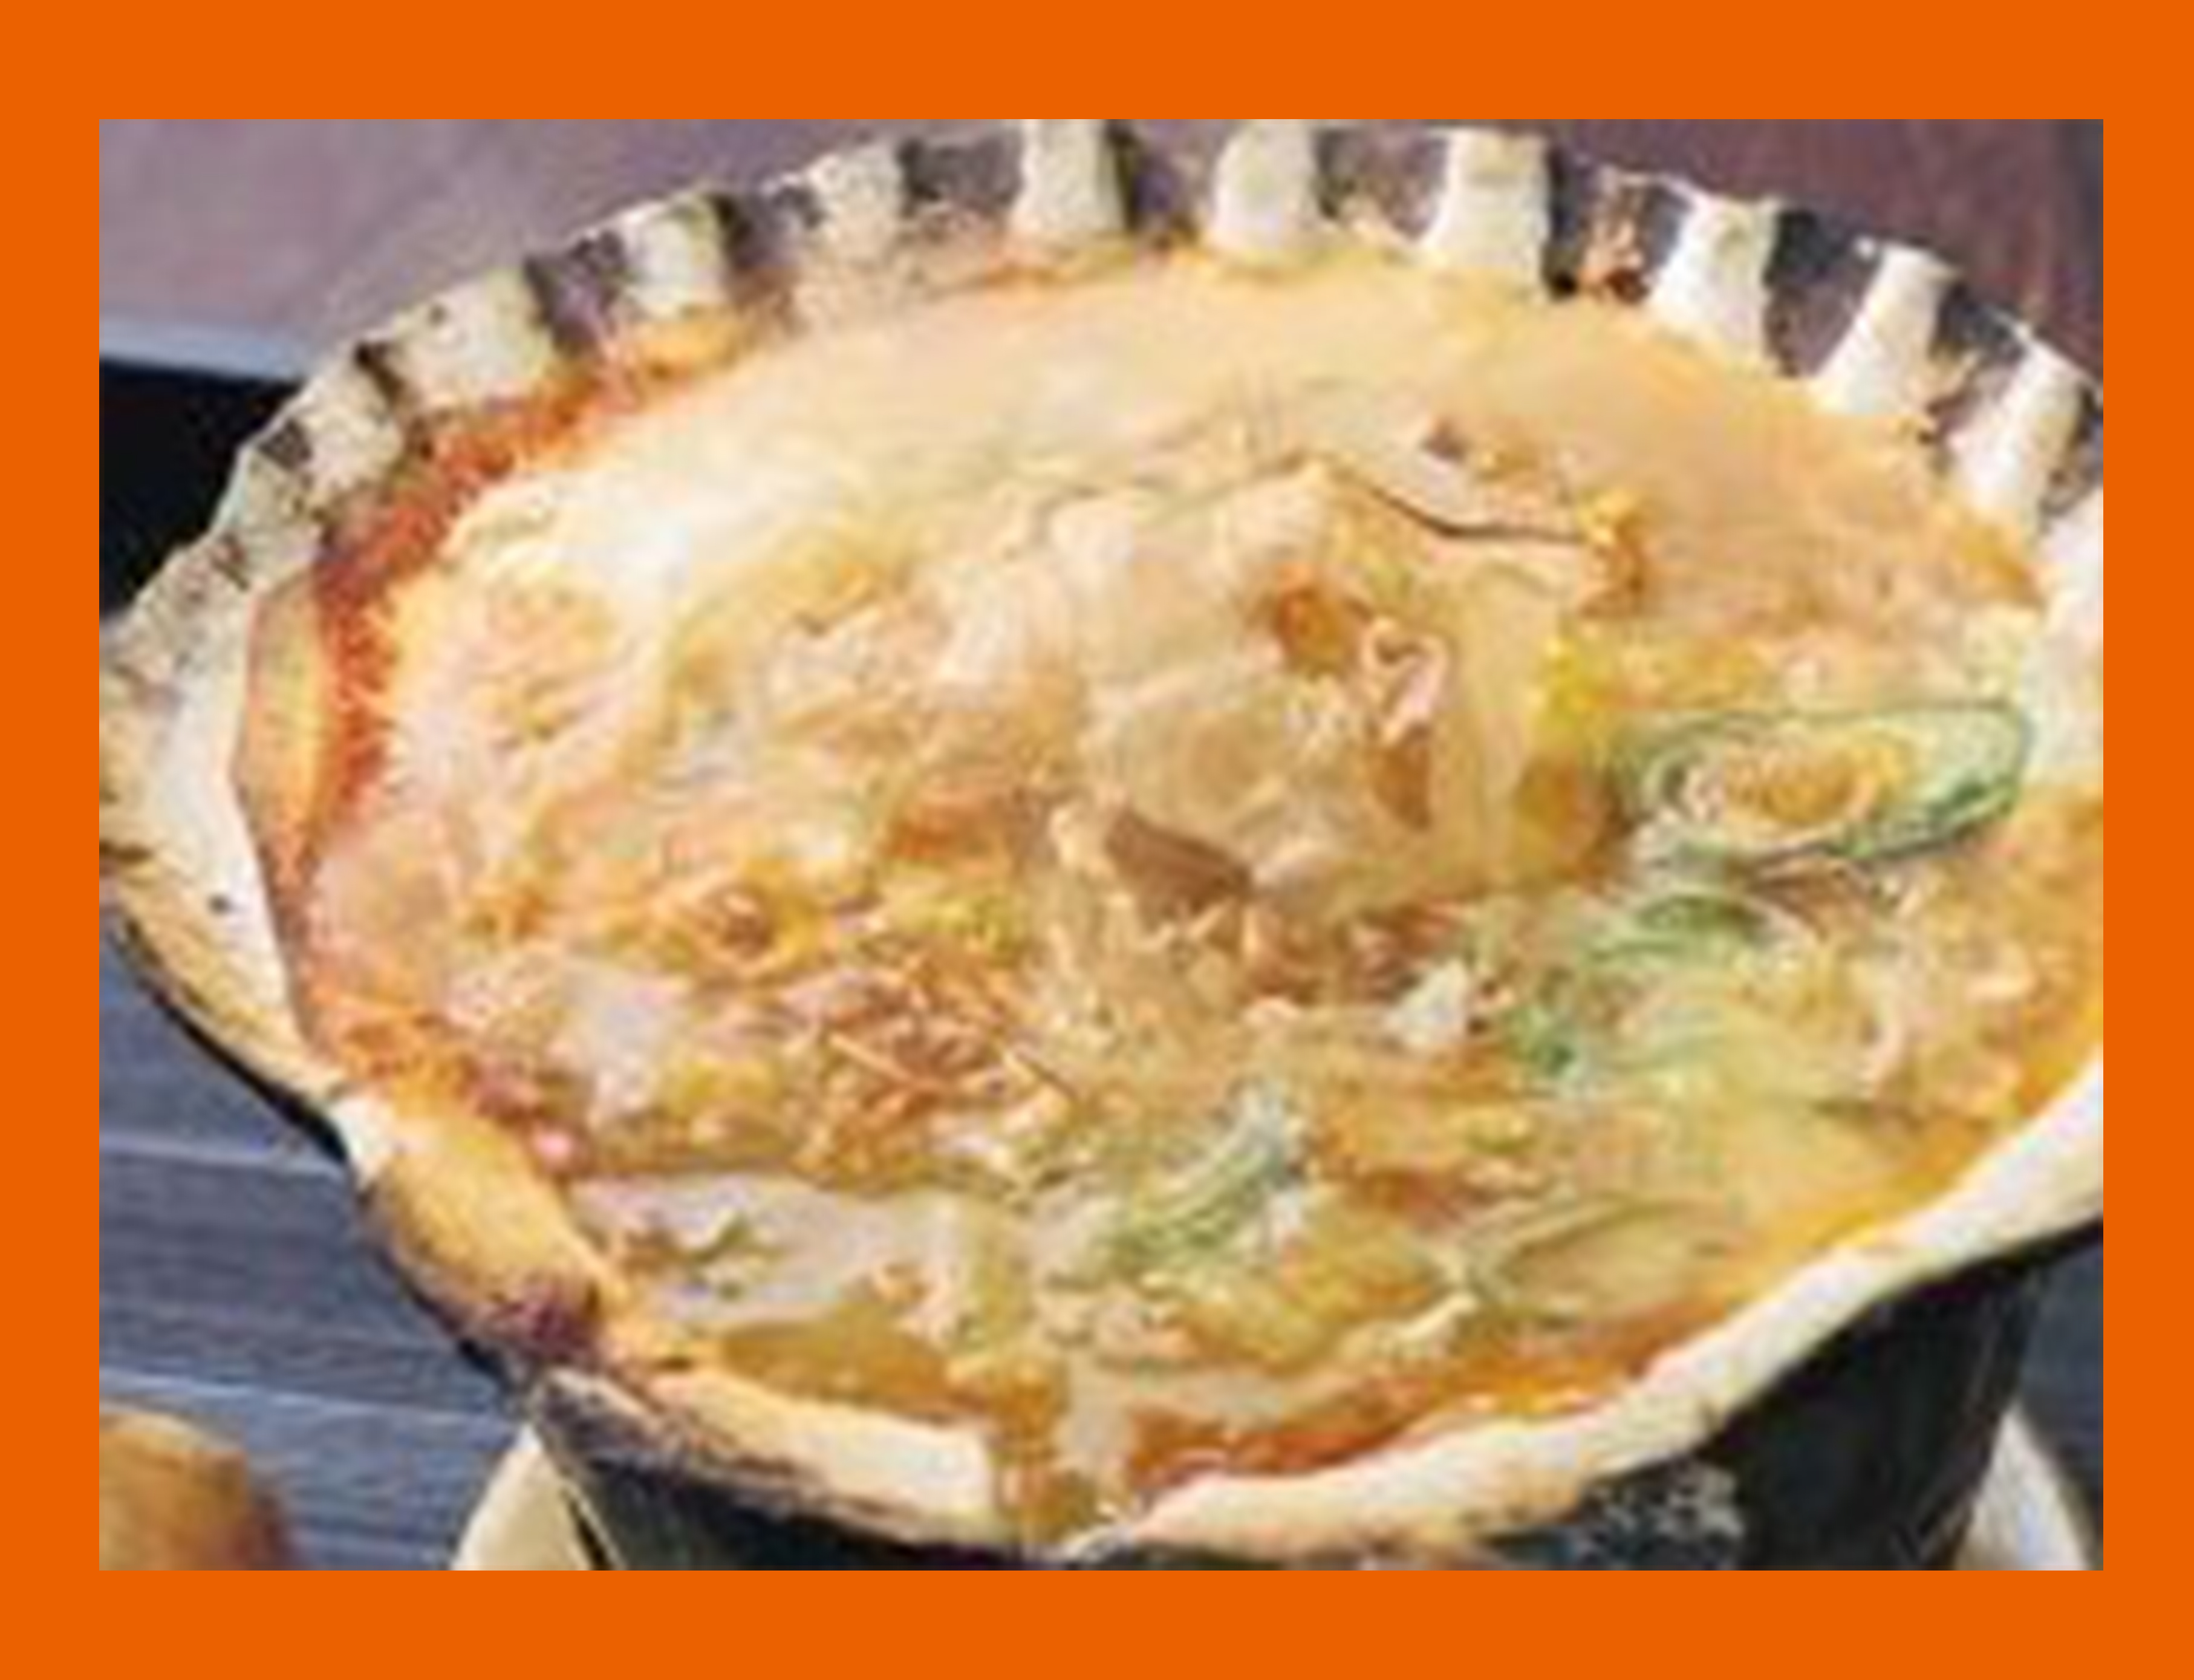 ケンミンショー 青森県民グルメ帆立の貝焼き味噌の作り方とは みそカヤキ用 ホタテの貝殻 通販情報 きになるメモブログ